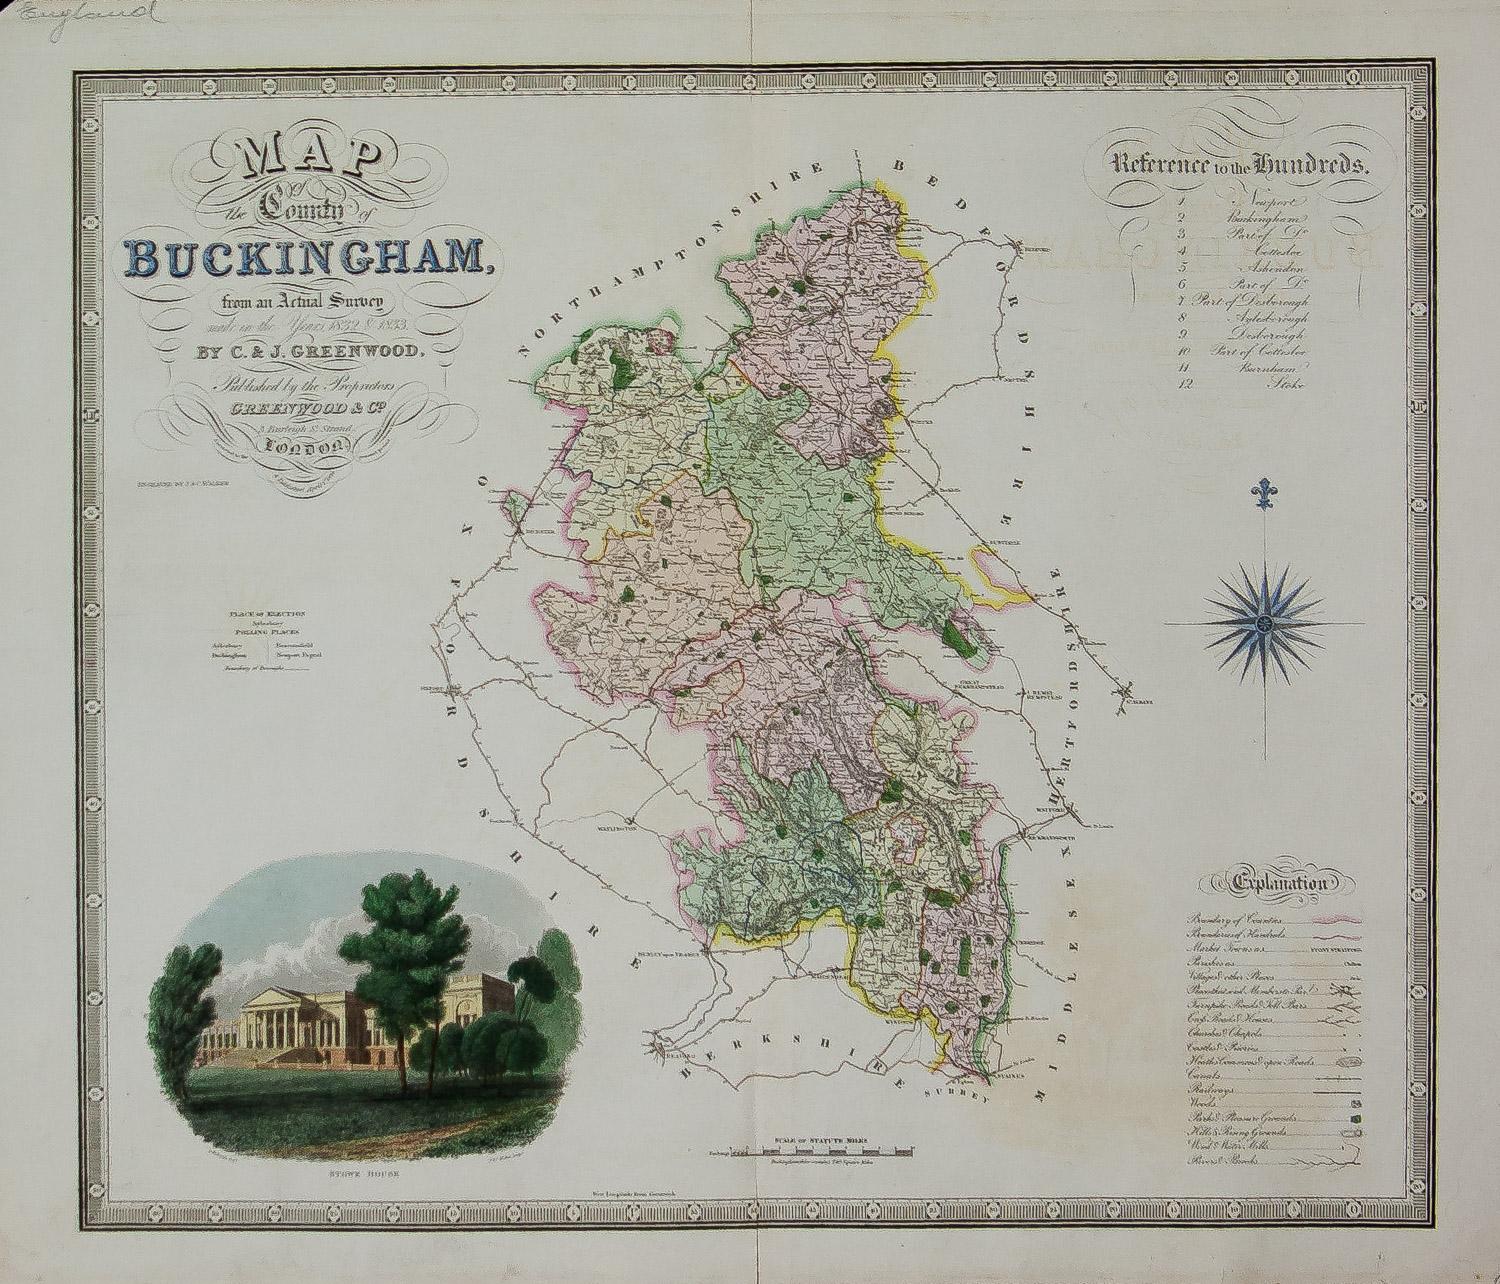 Carte du County de Buckingham d'après une étude réelle